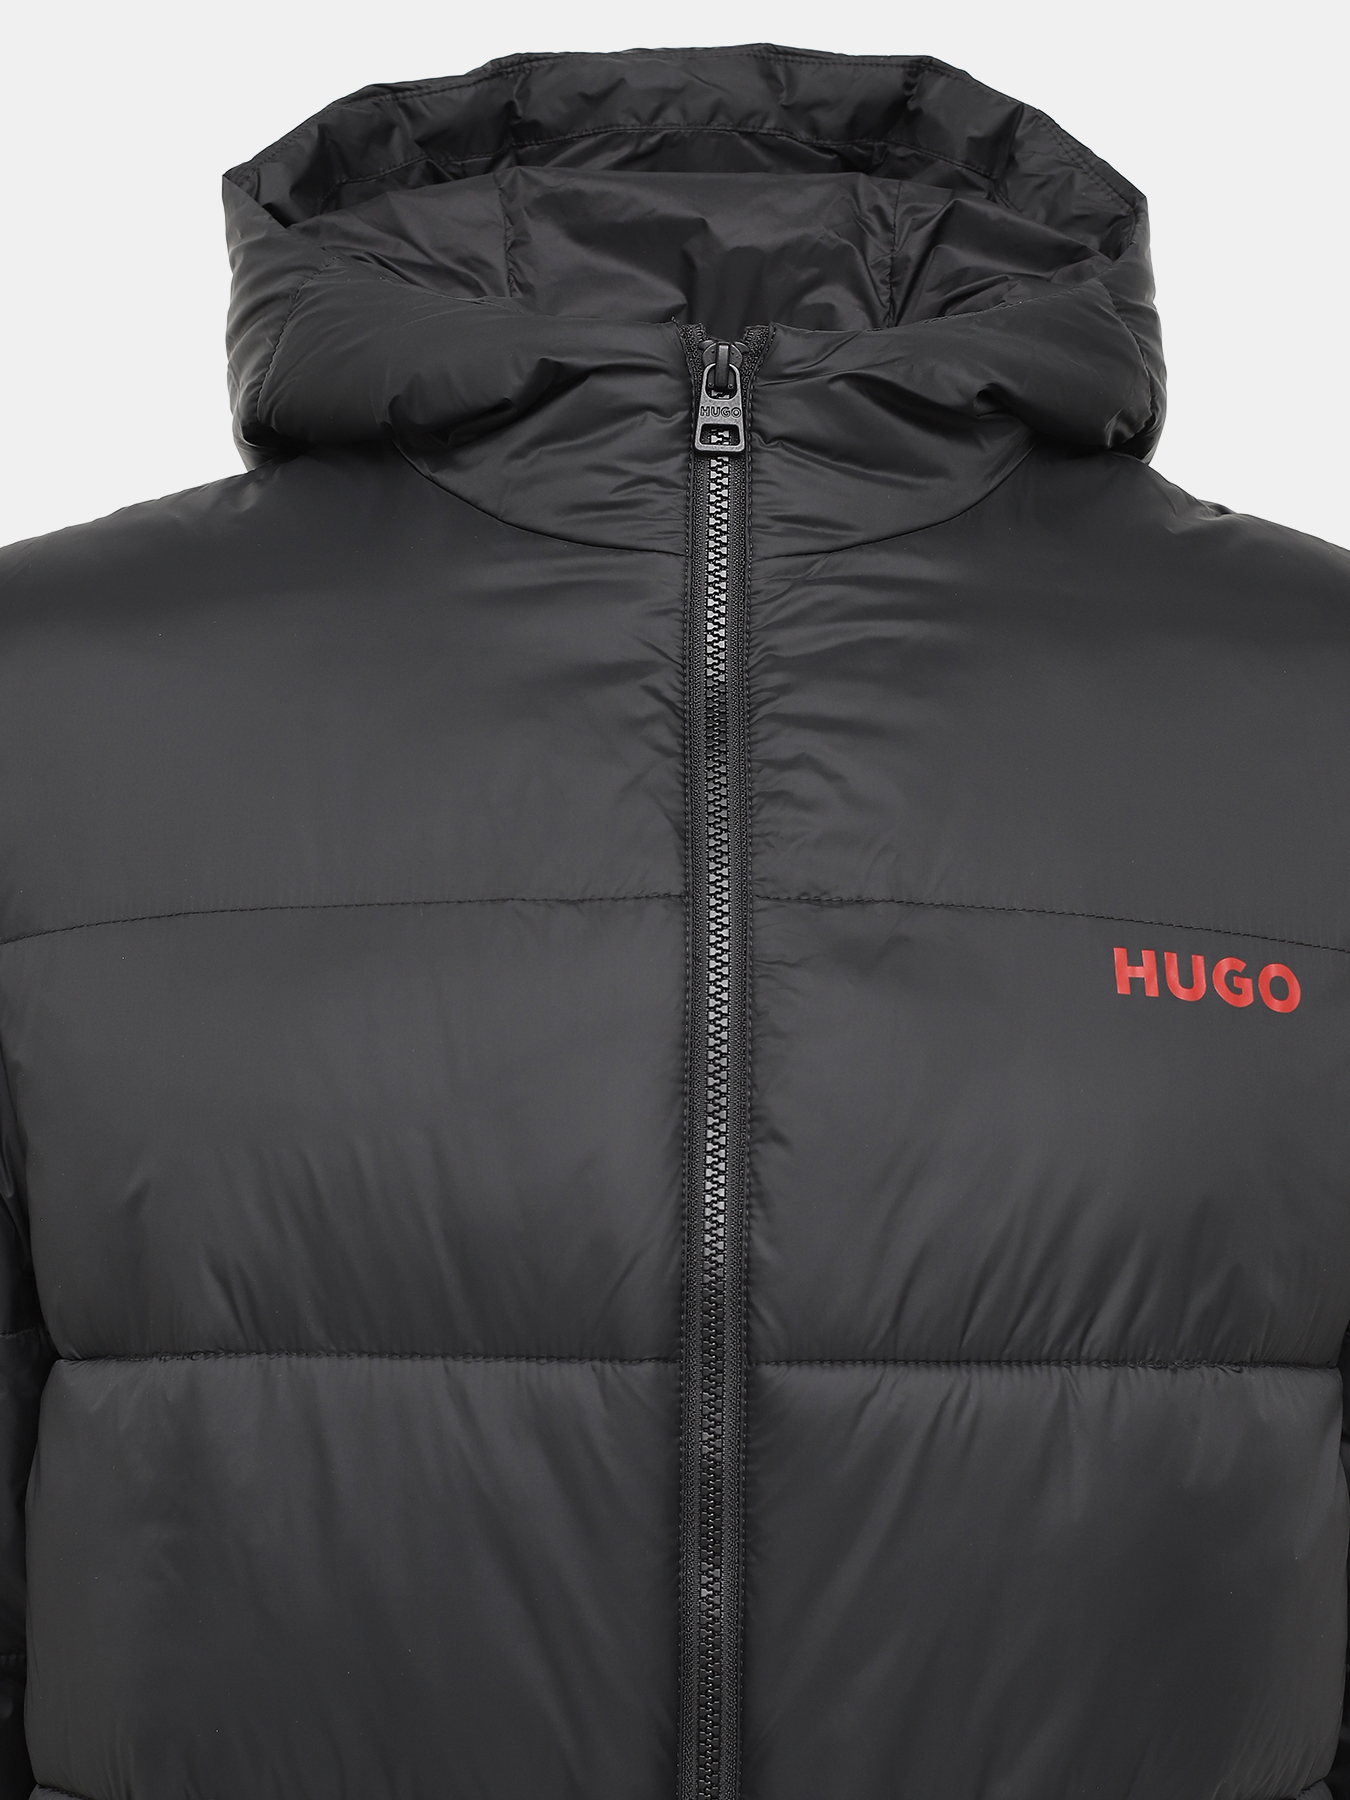 Удлиненная куртка Mati HUGO 426043-046, цвет черный, размер 54-56 - фото 5